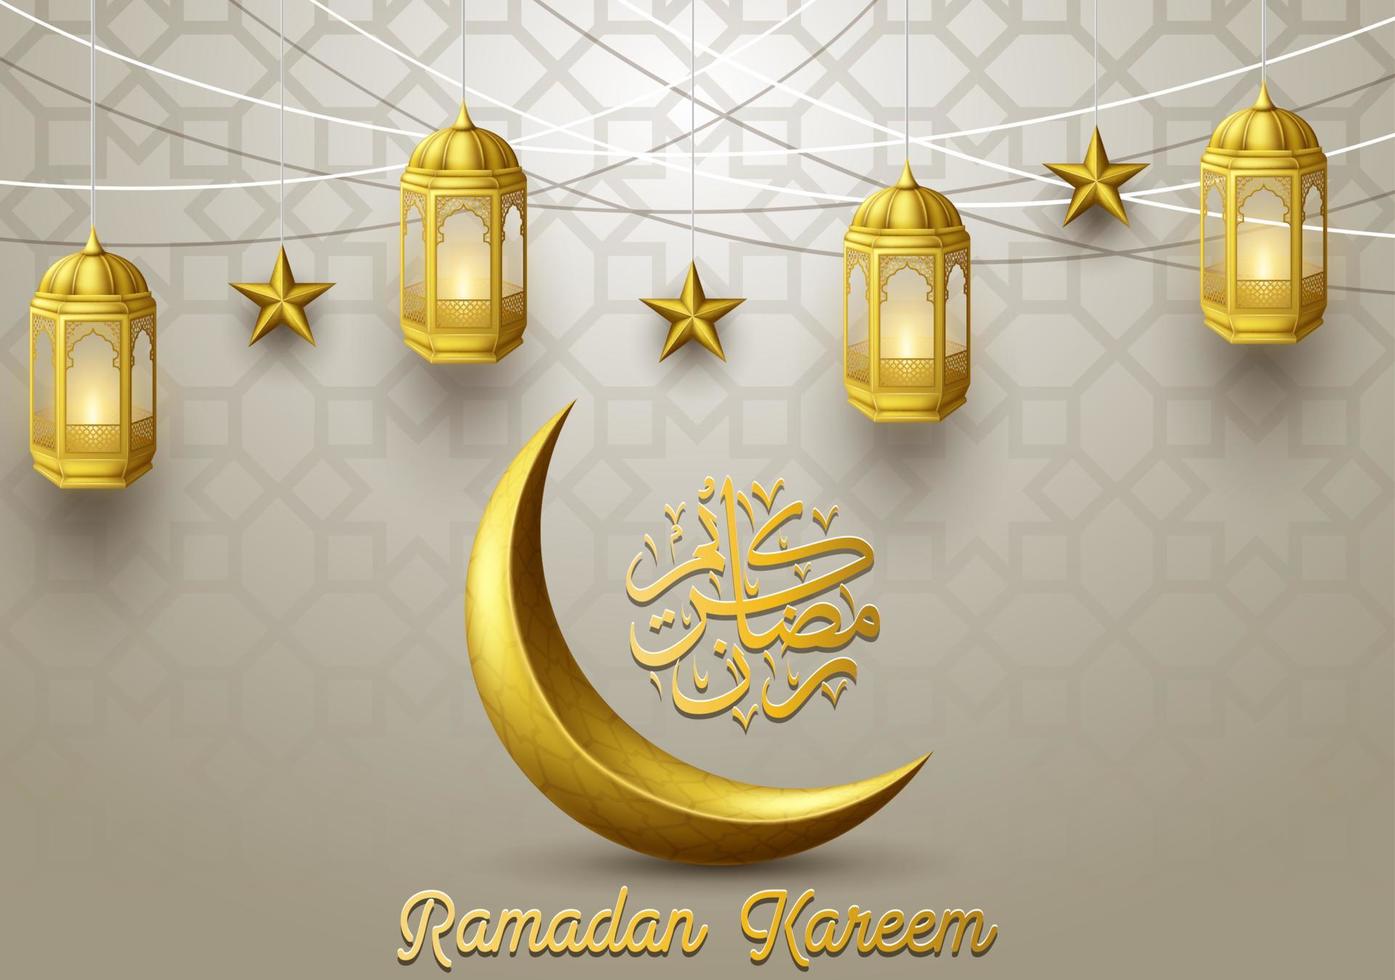 Ramadan kareem saluto carta sfondo vettore